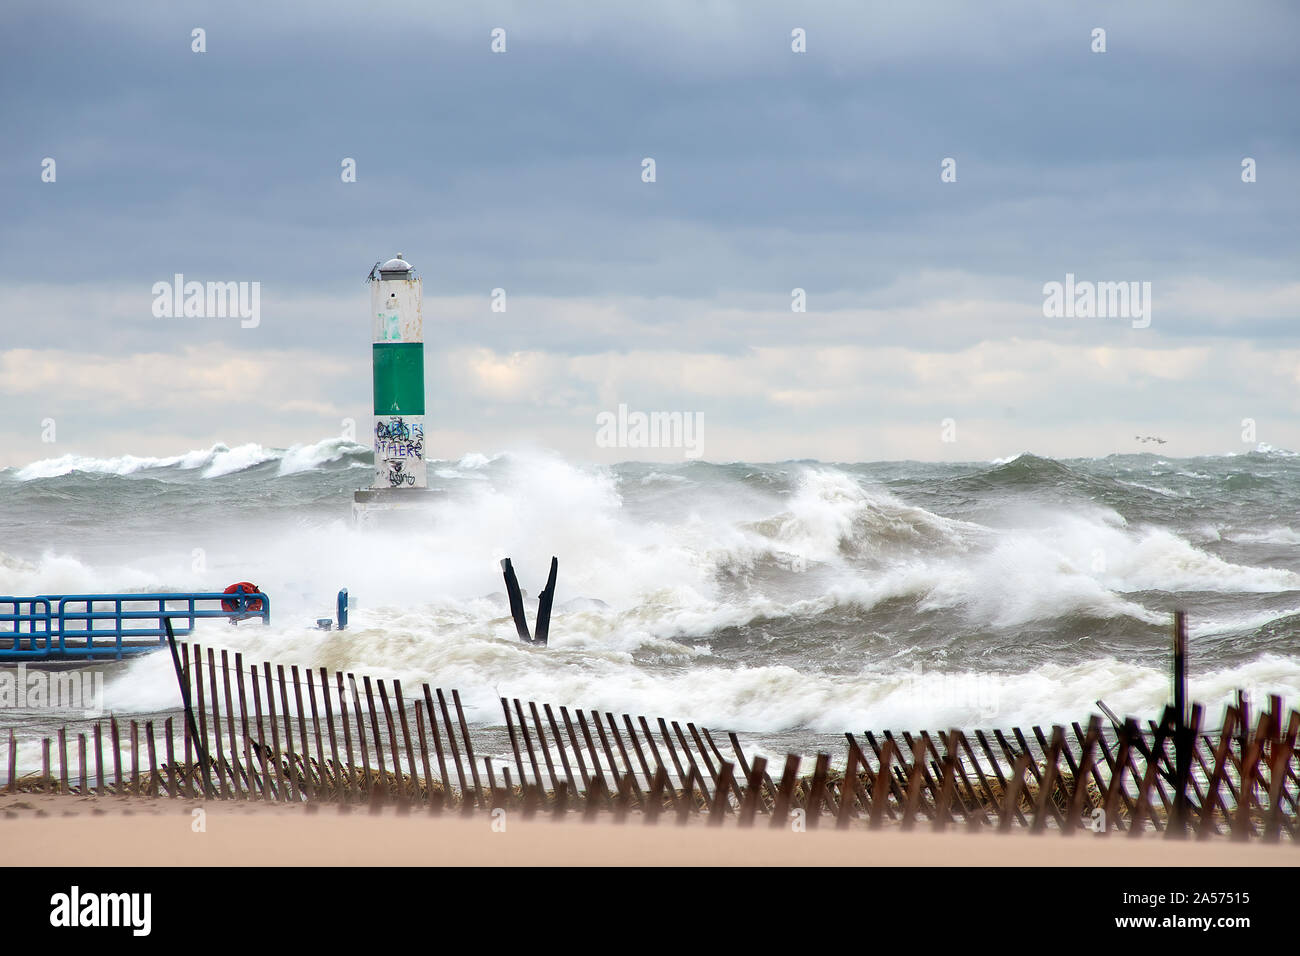 Alte onde tempestose sul Lago Michigan con verde e bianco marcatore di canale e recinzione in spiaggia Foto Stock